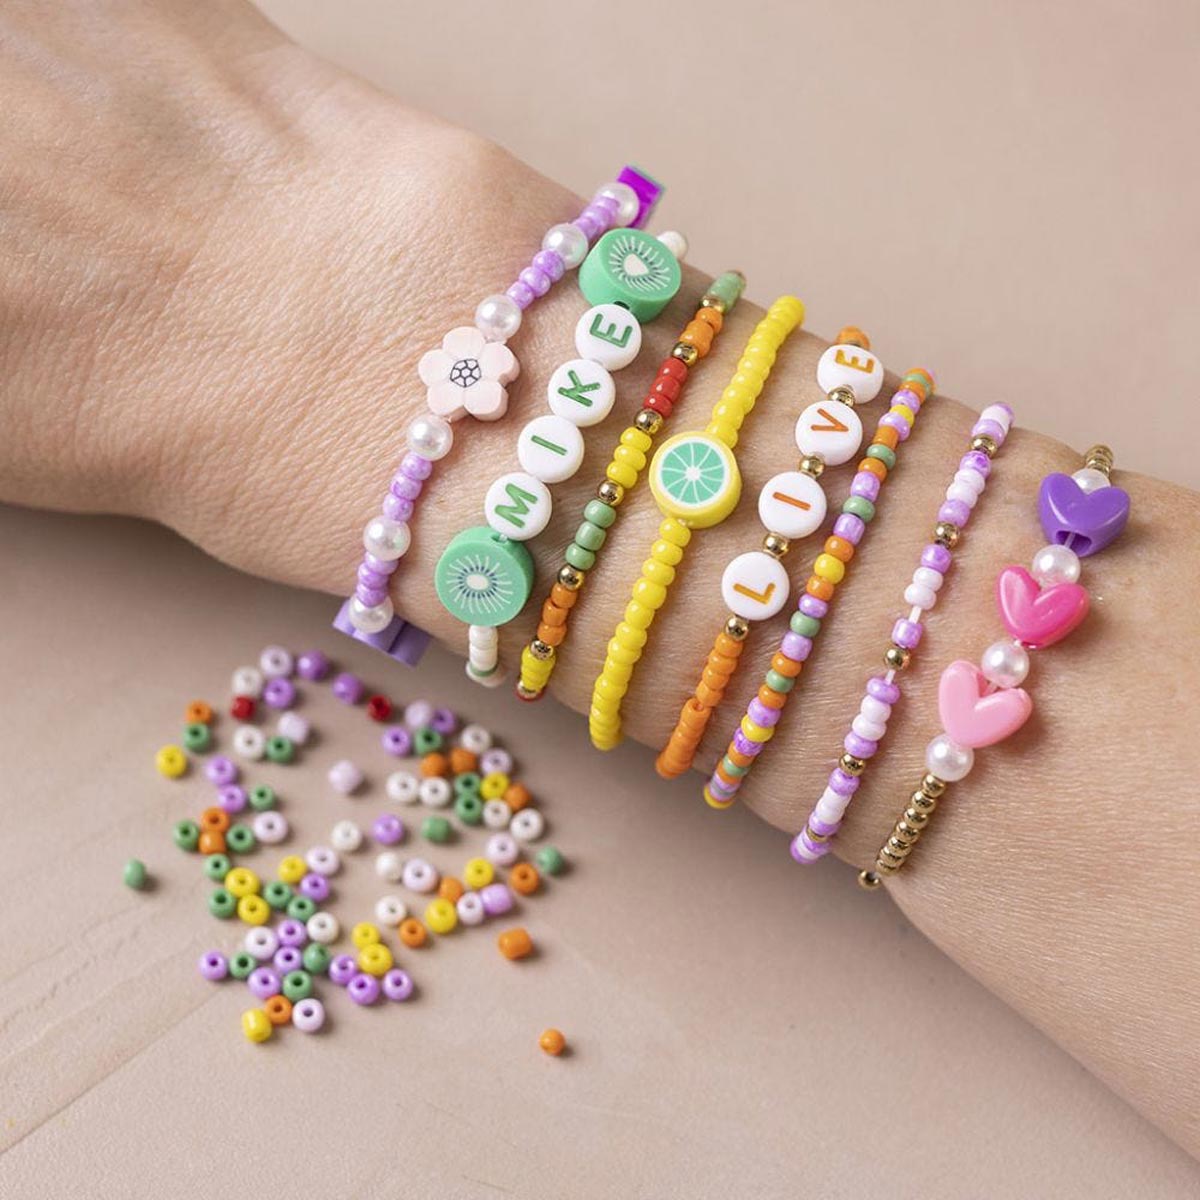 Creativ - mini kit artigianale - gioielli - bracciali colorati - 1 pacchetto